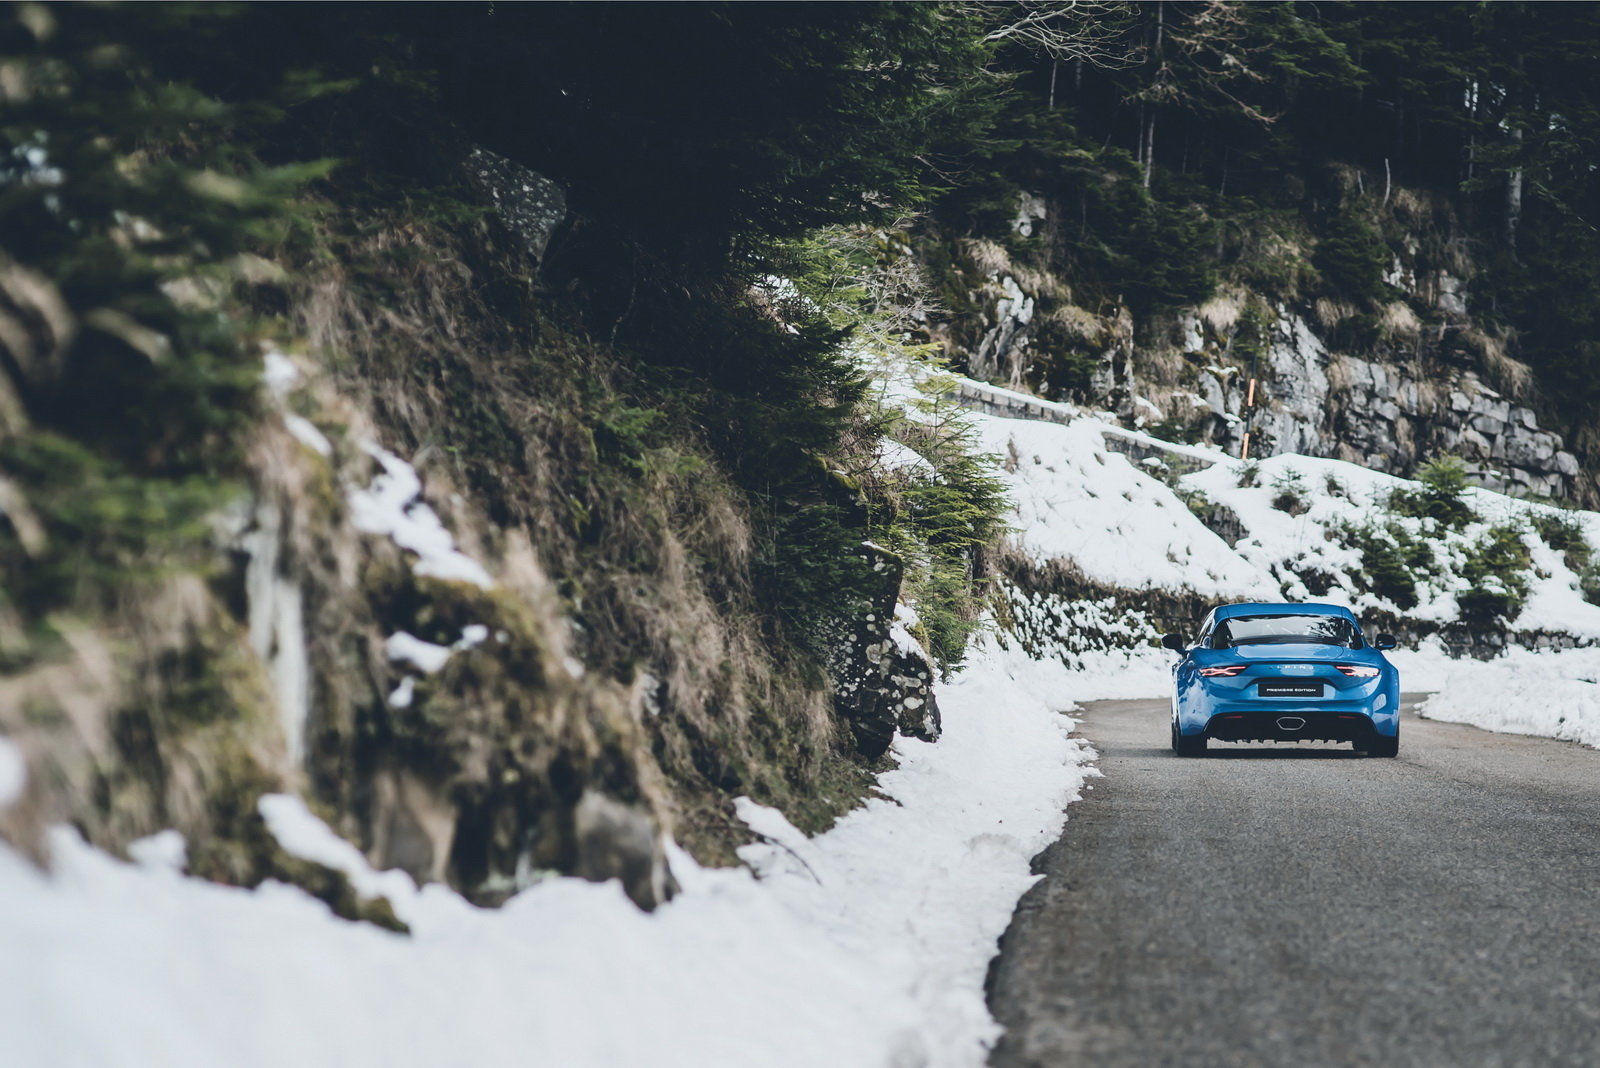 Alpine A110 je zpátky, v útrobách vozí turbo a dvouspojkový automat.